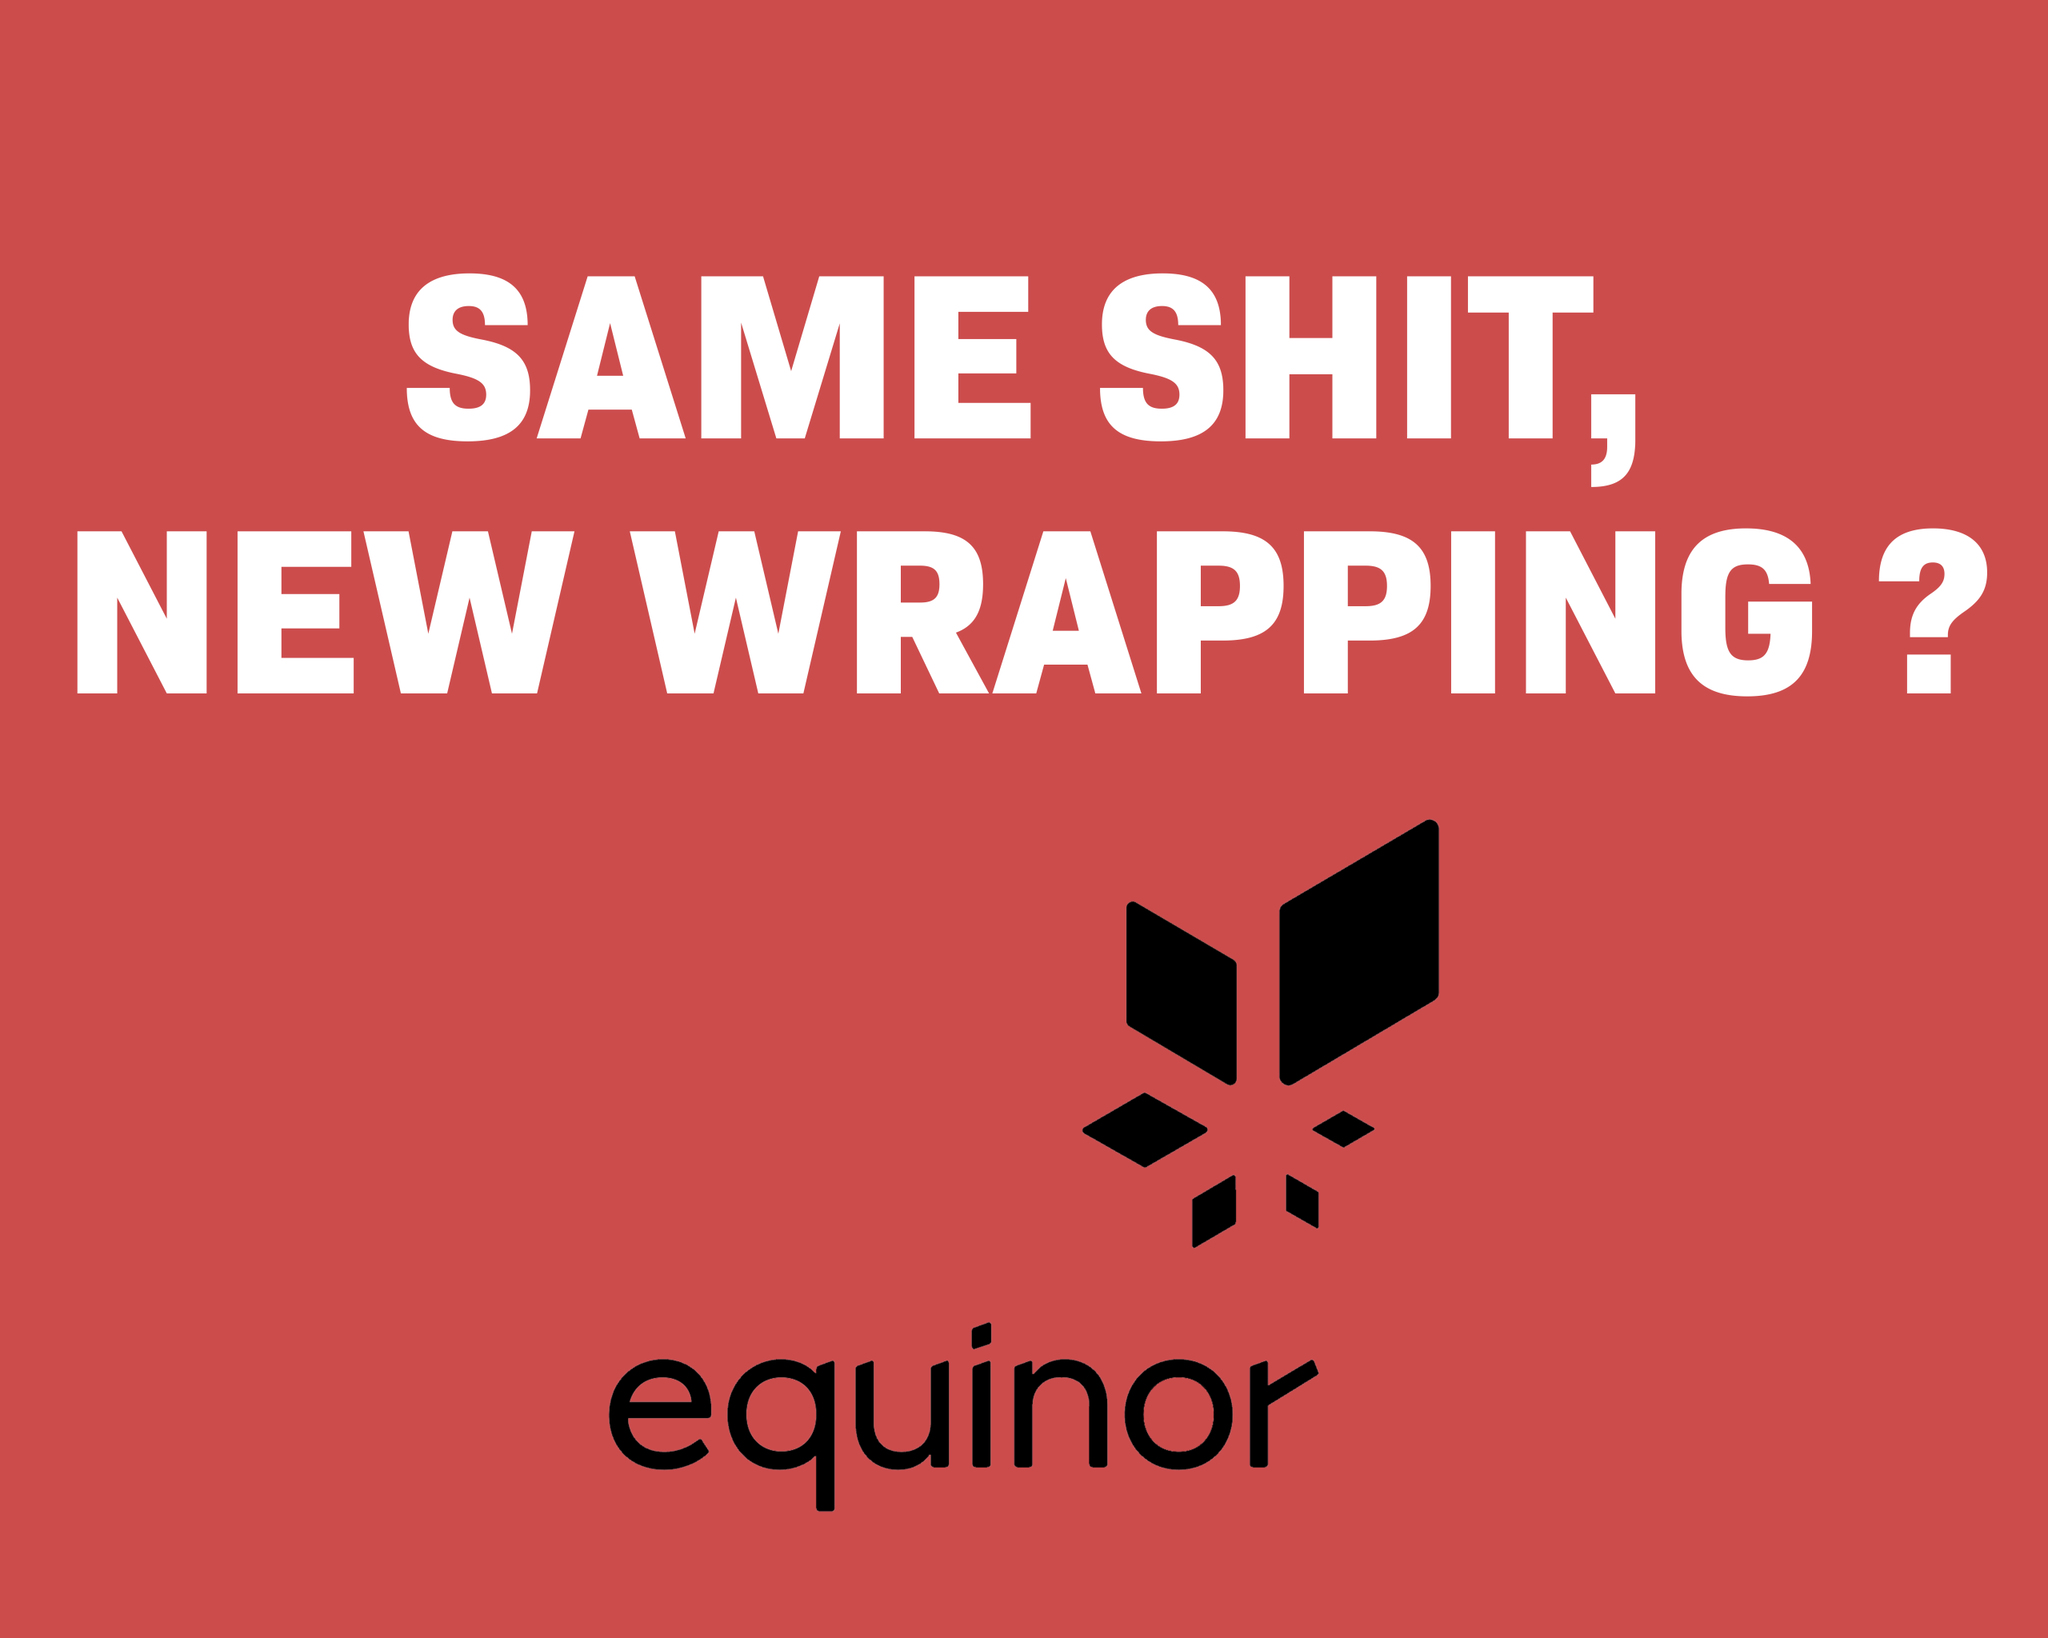 Equinor-logo og tekst som sier "Same shit, new wrapping?"